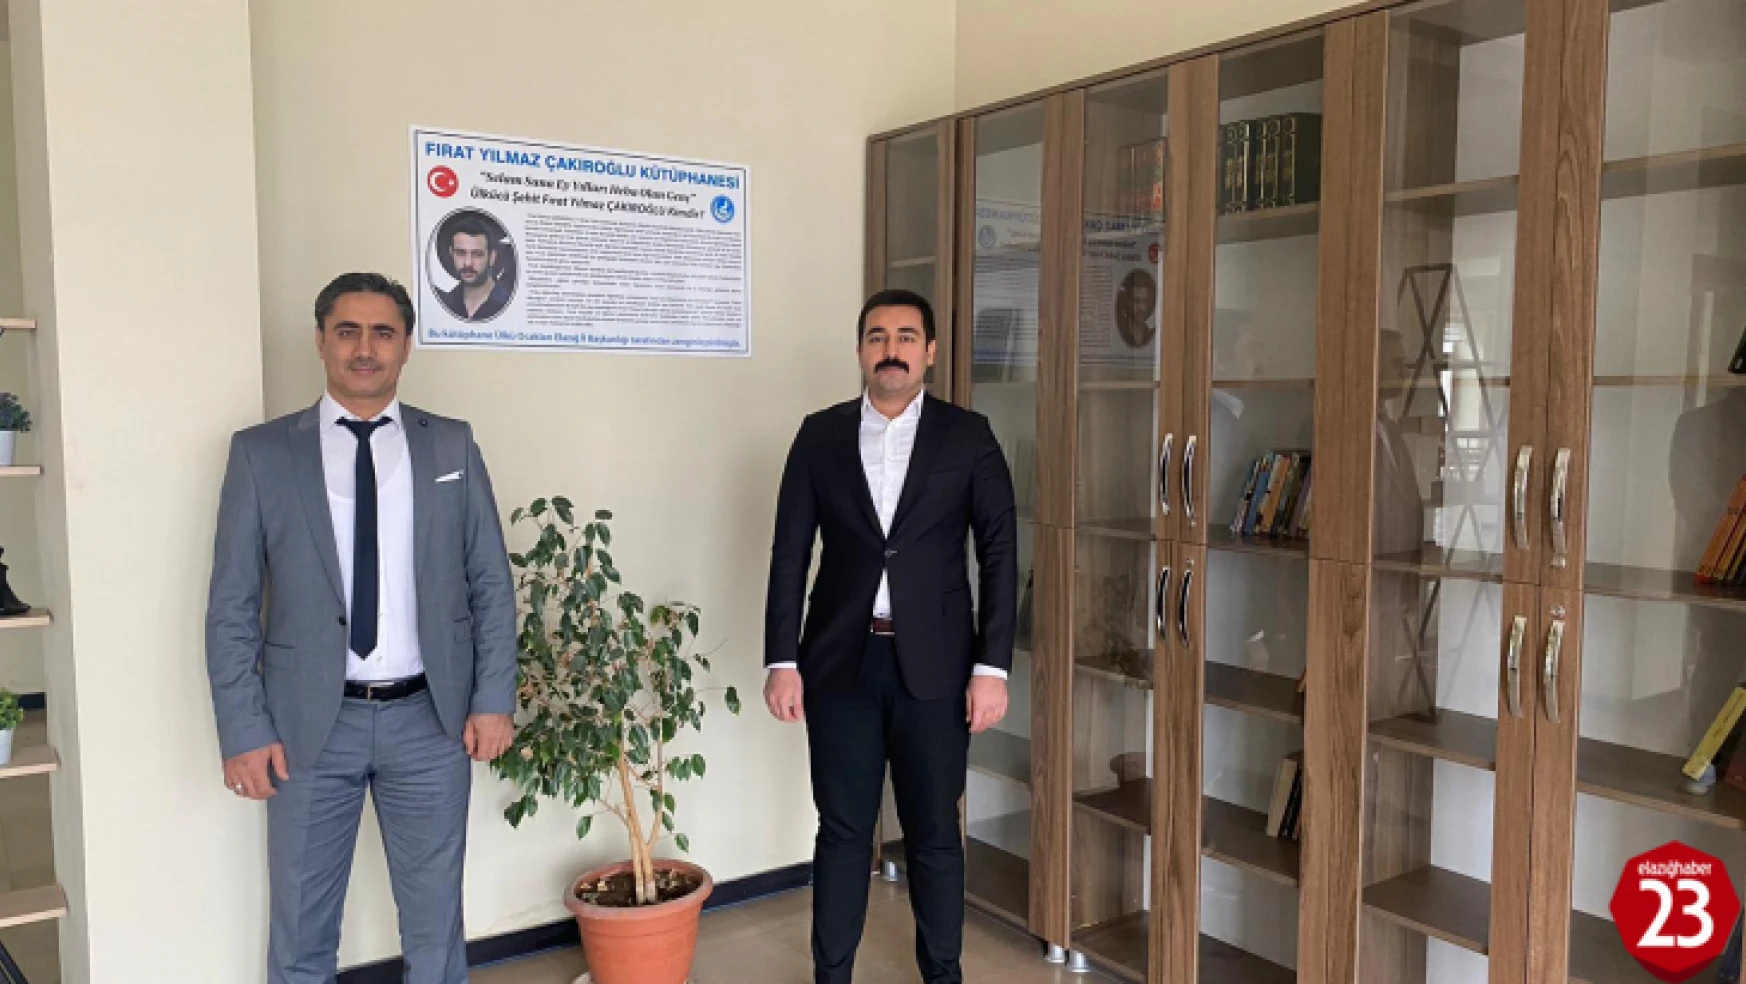 Zeycan Yıldırım Mesleki ve Teknik Anadolu Lisesinde Fırat Yılmaz Çakıroğlu Kütüphanesi Kuruldu